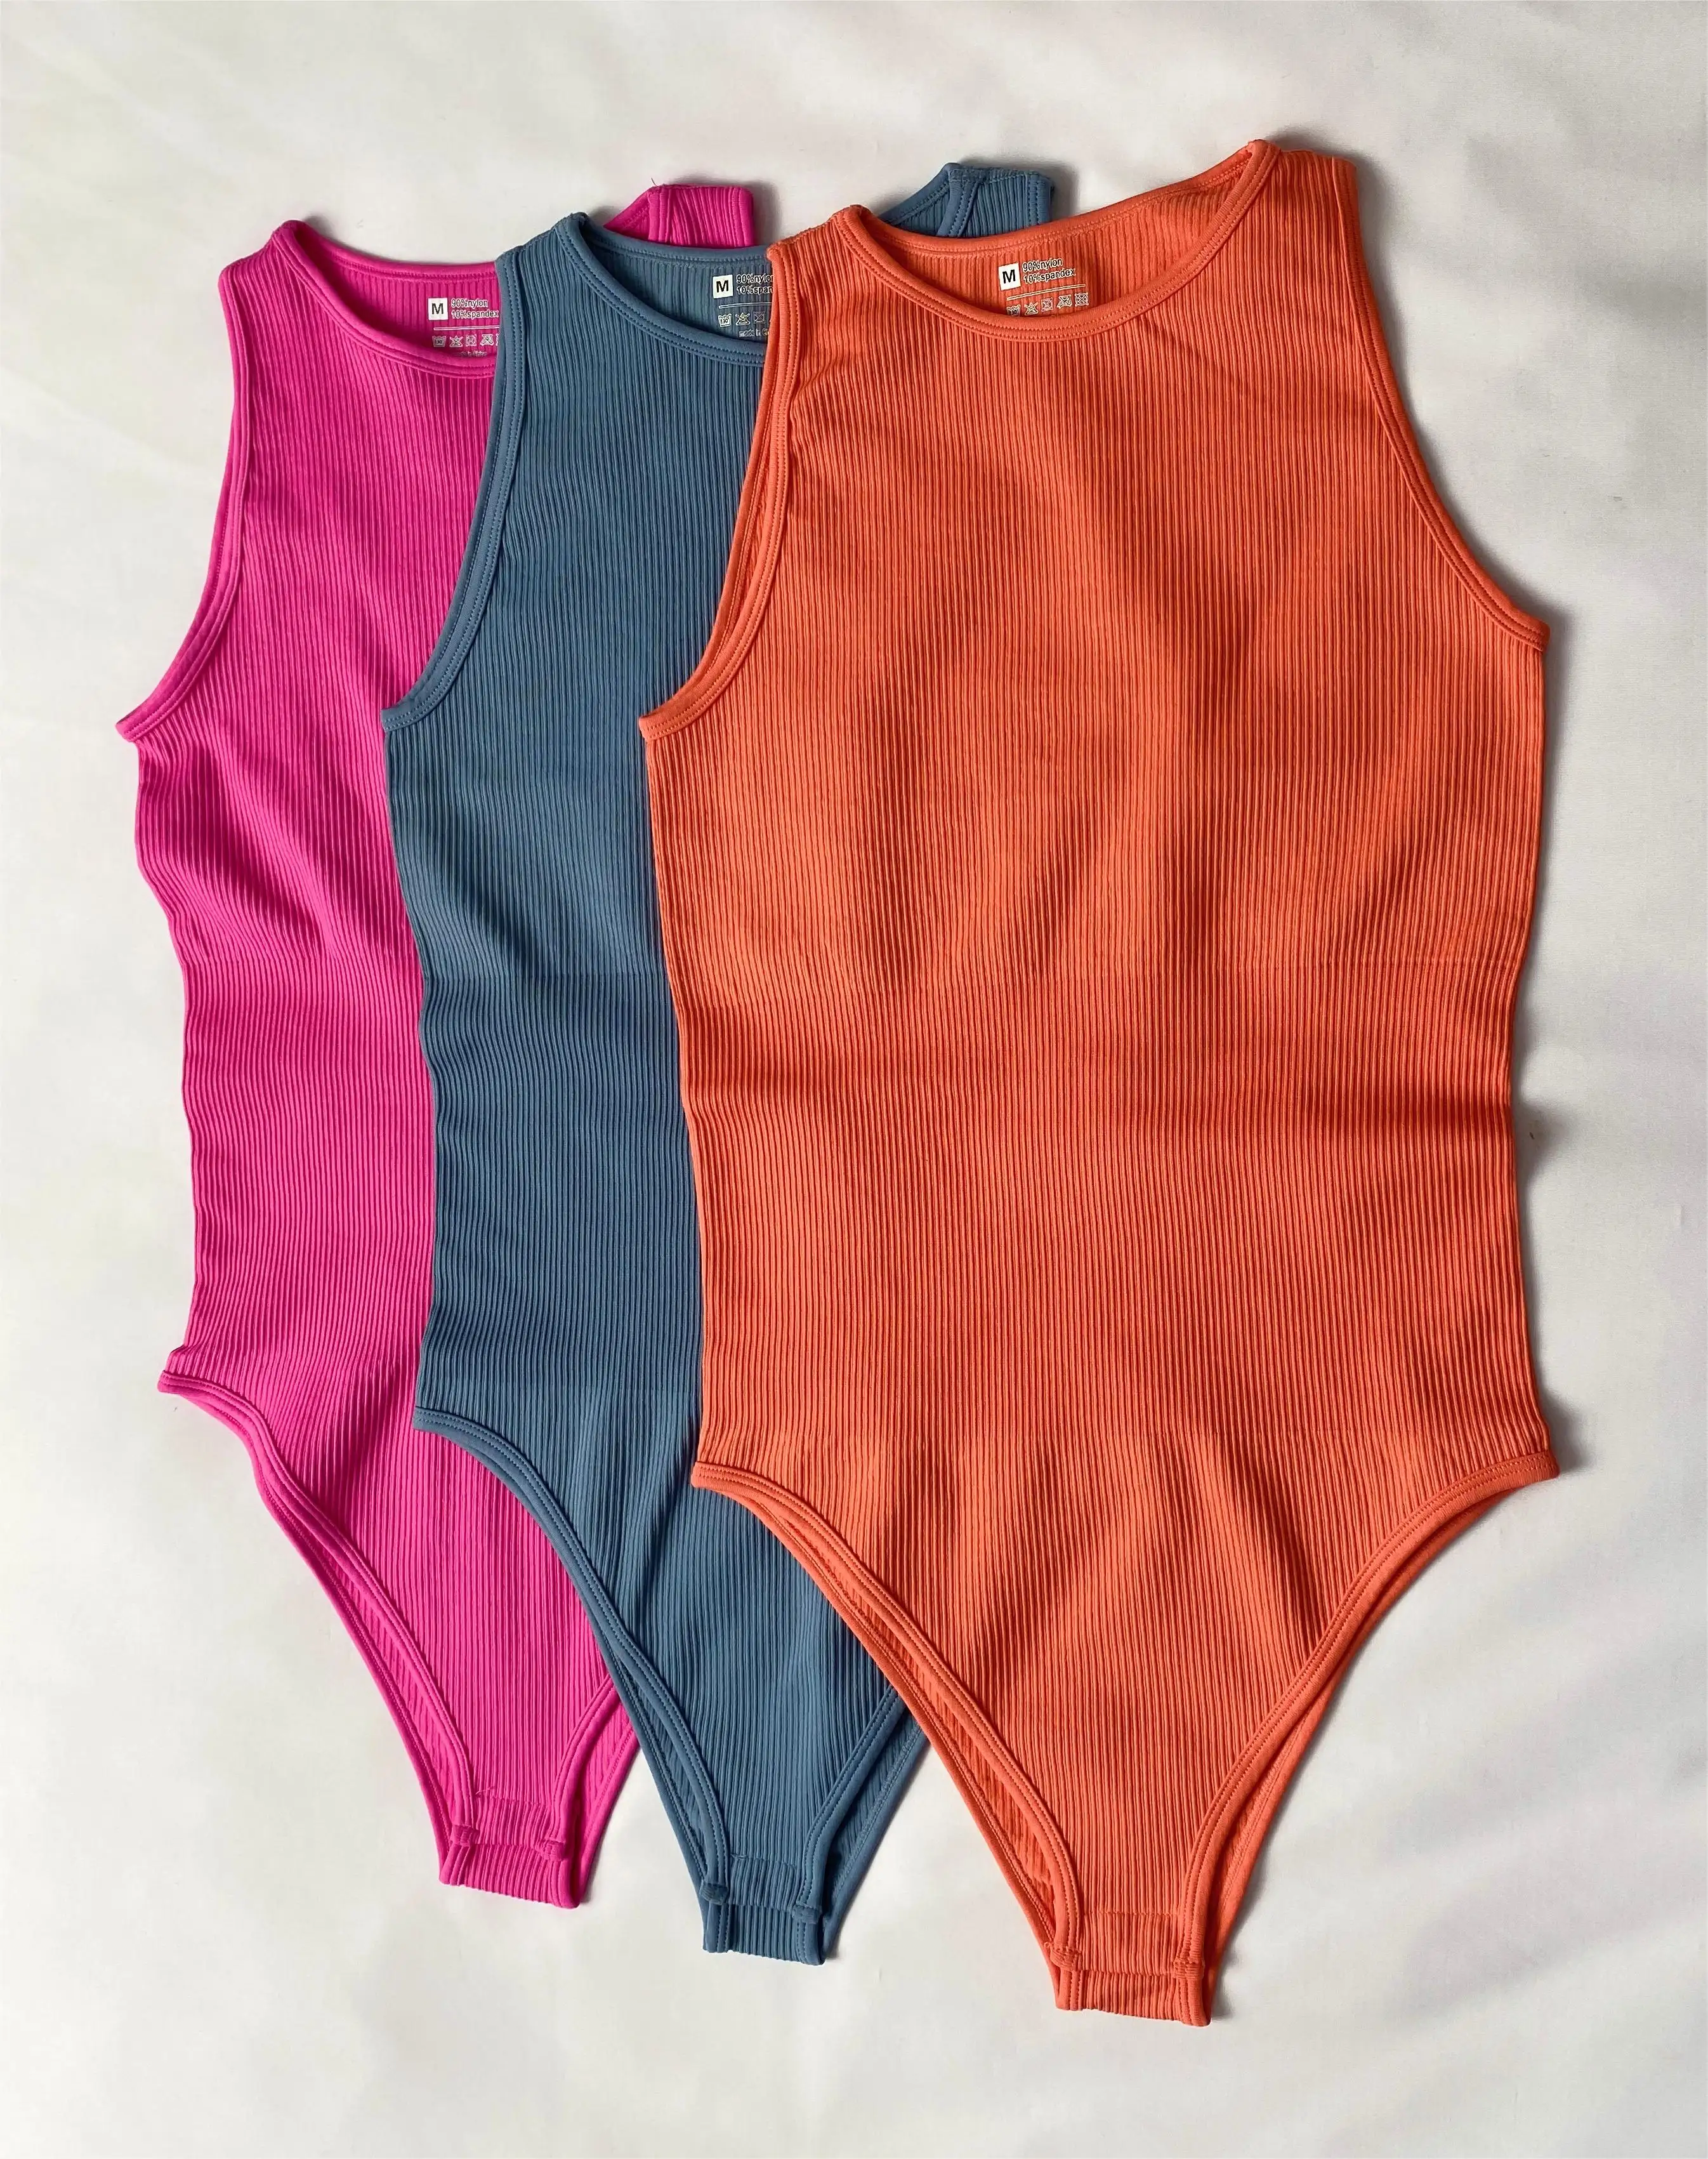 OQQ toptan kadın Bodysuits seksi nervürlü tek parça kolsuz ekip boyun üstleri Bodysuits